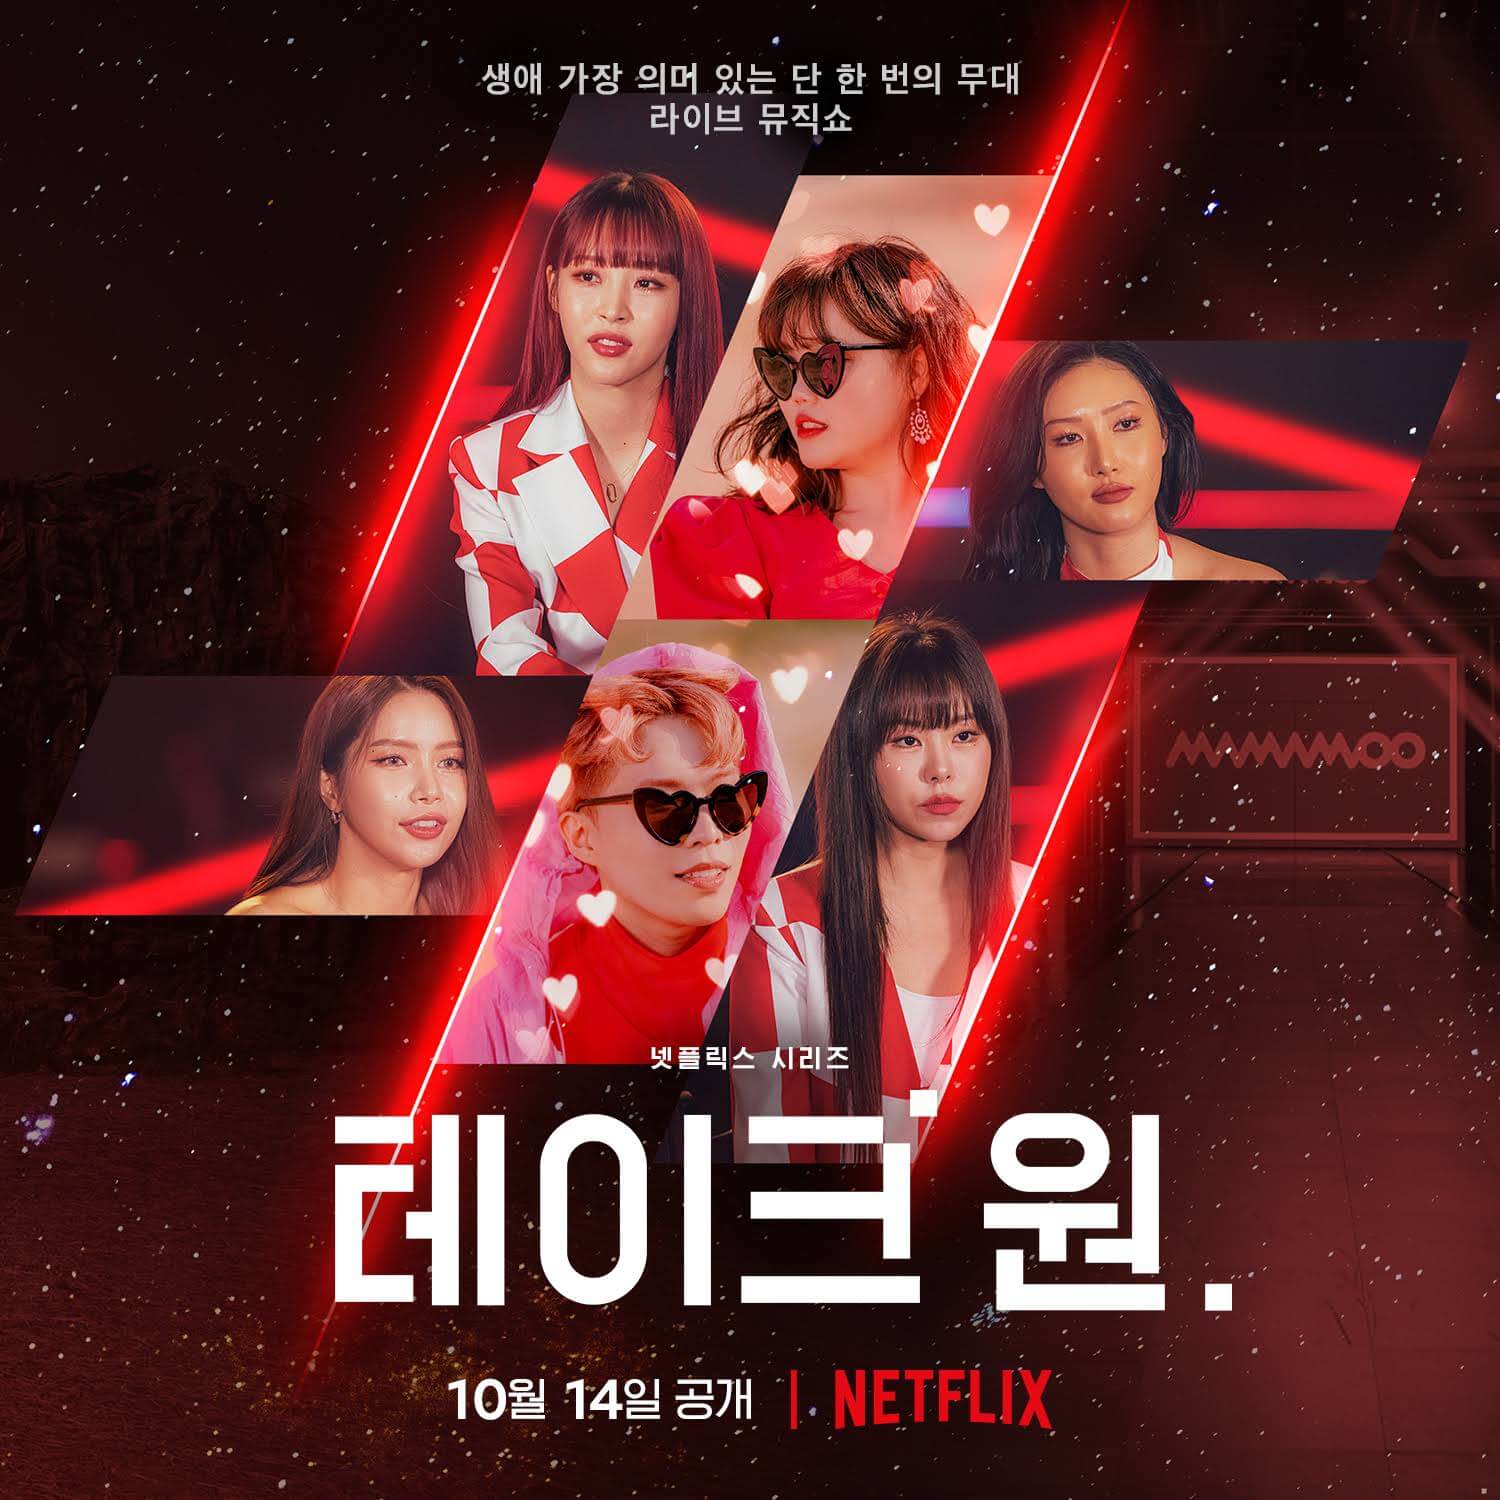 programa de variedades de música coreana toma 1 que llegará a netflix en octubre de 2022 póster 2